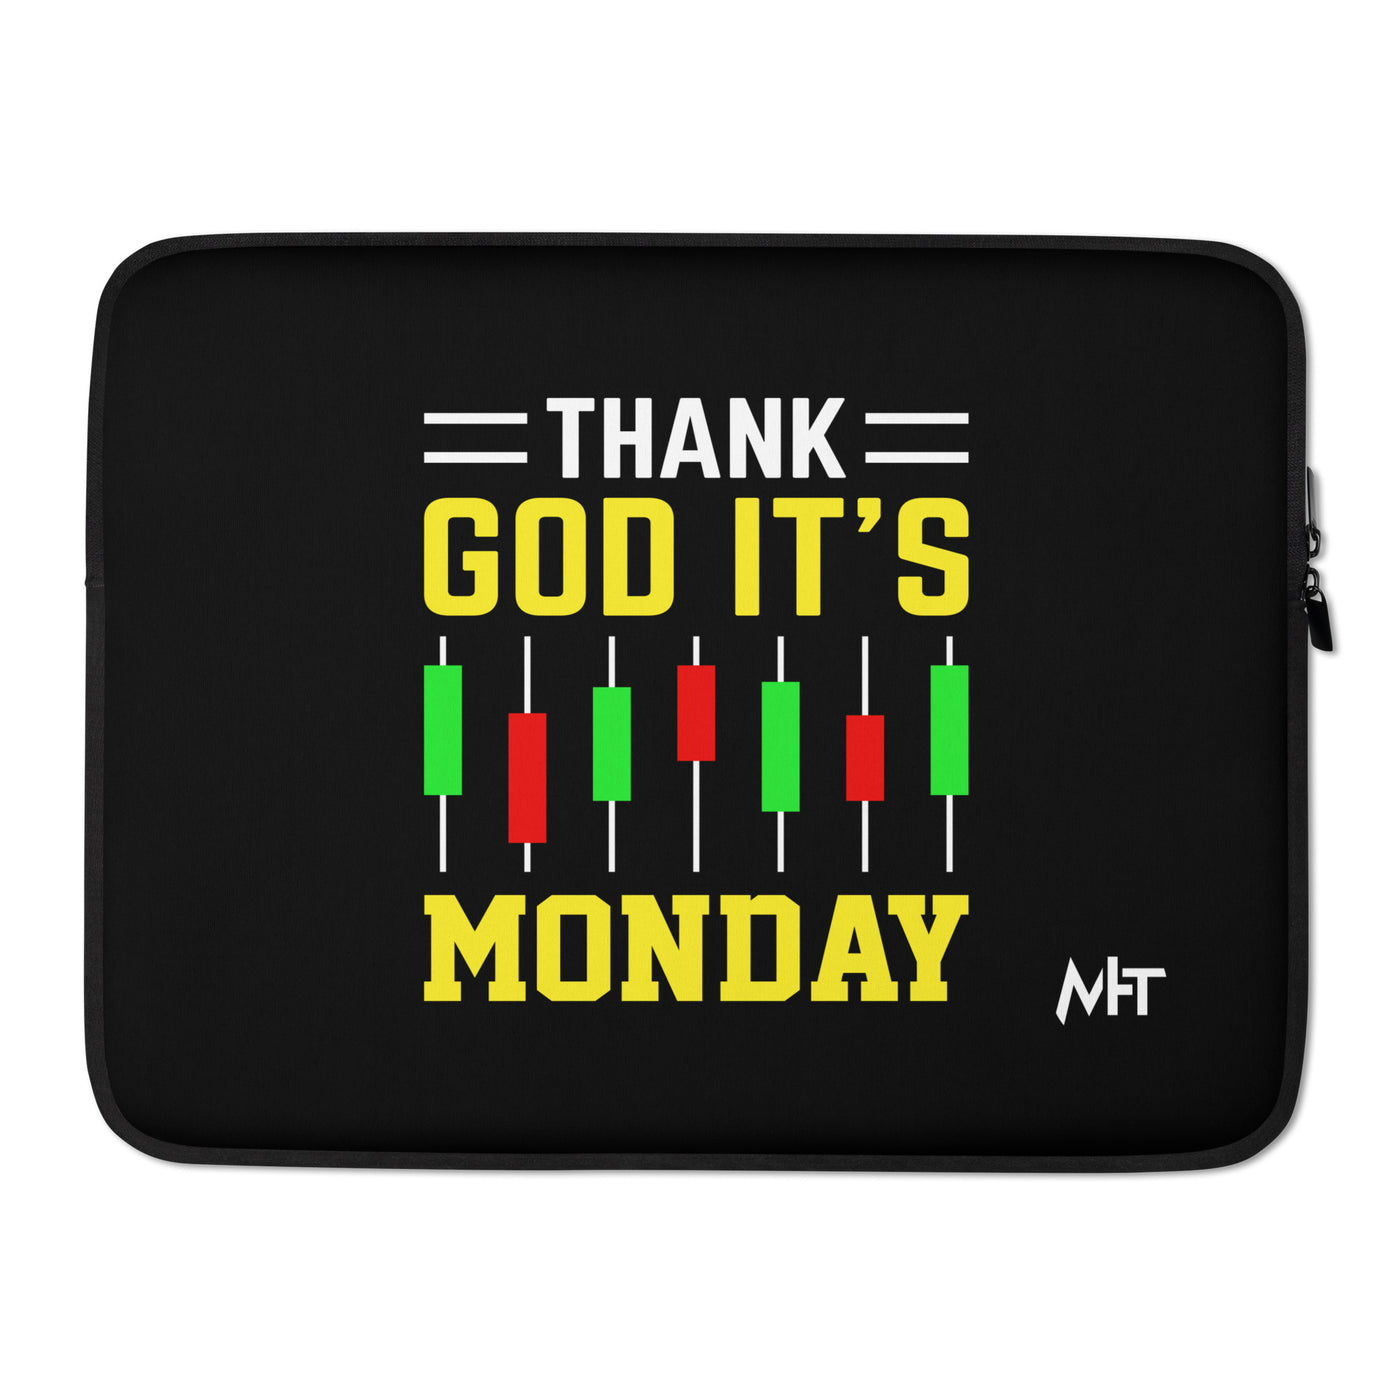 Thank God! It's Monday - Laptop Sleeve